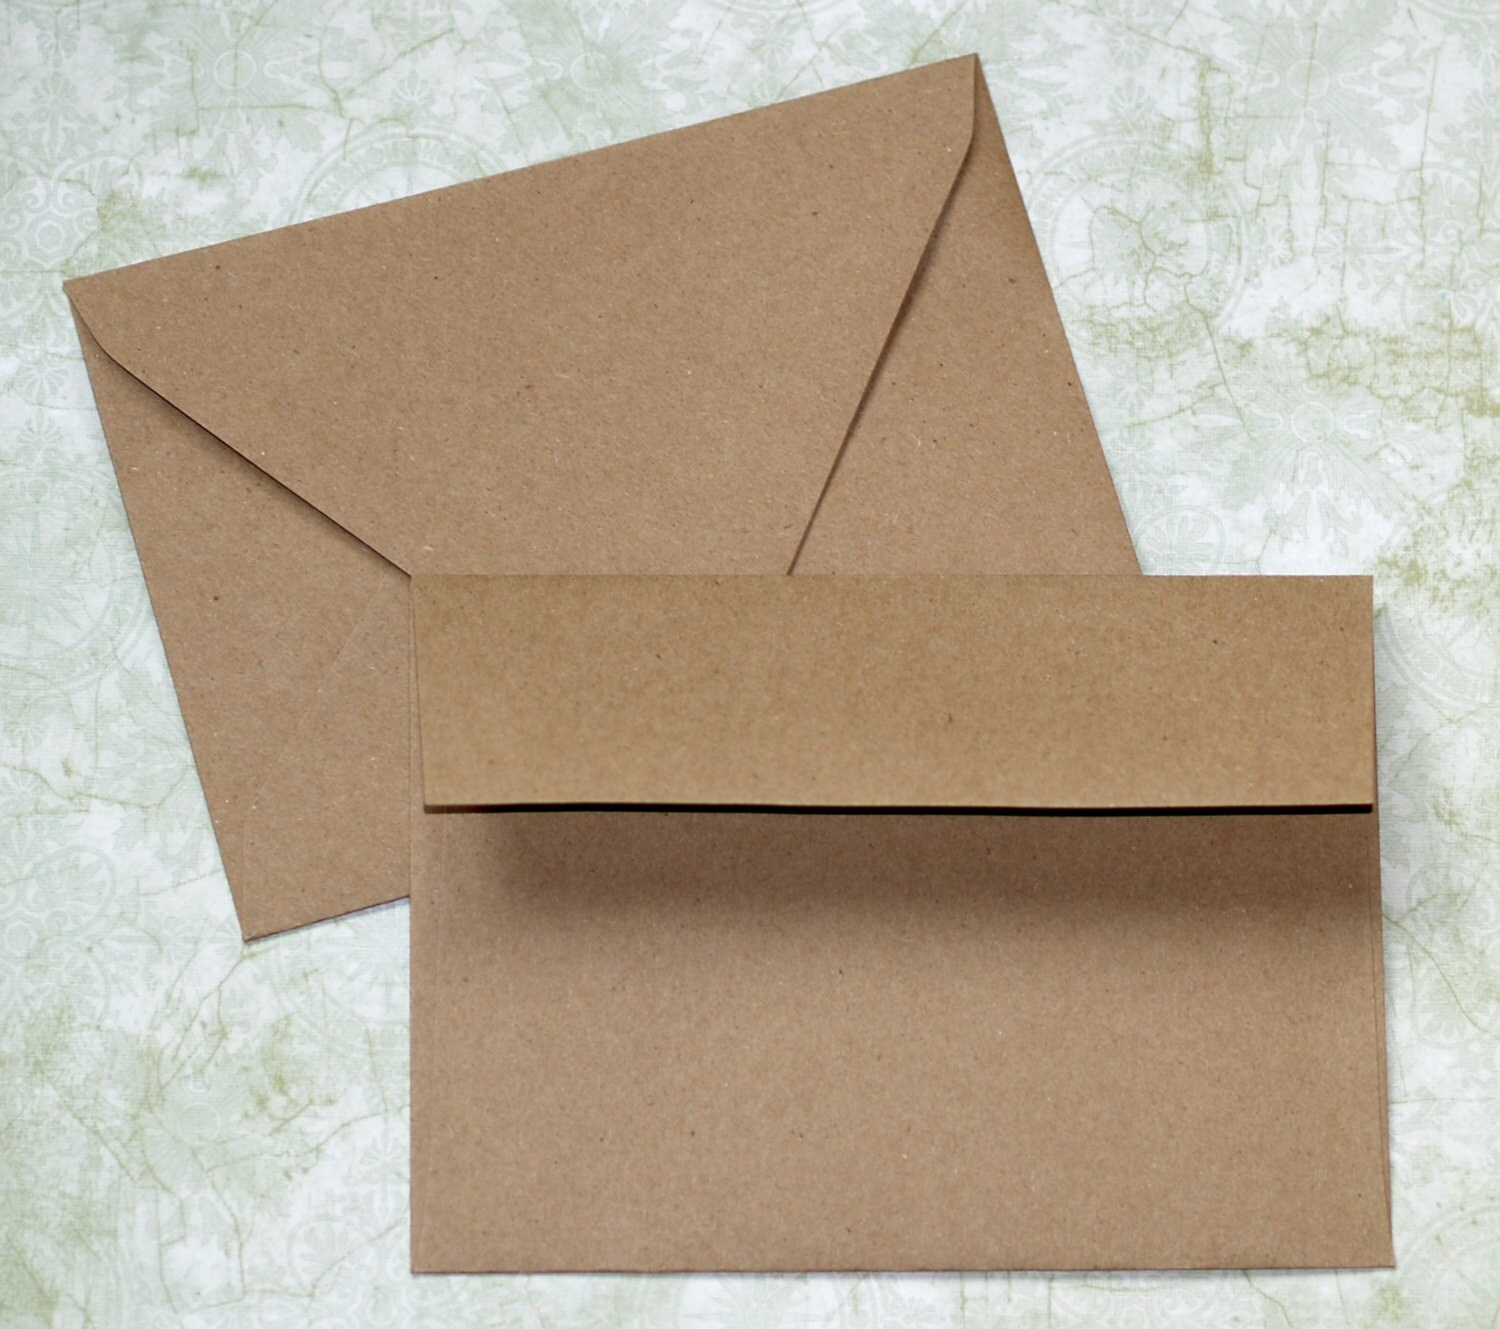 a7 envelope size